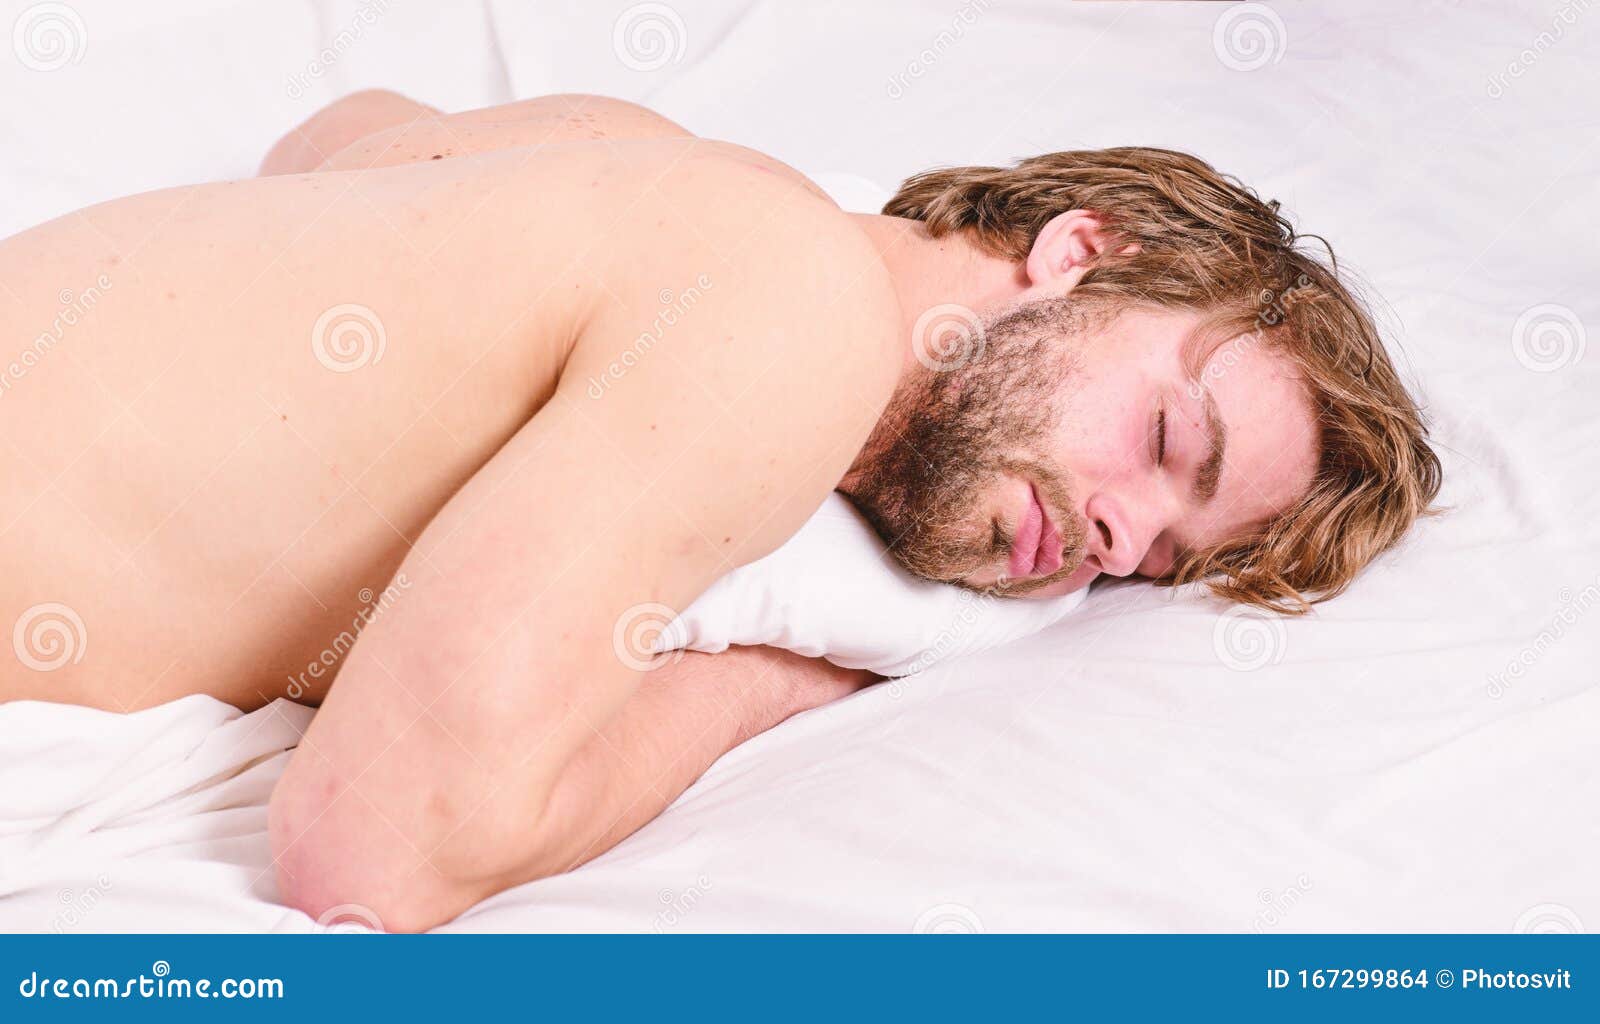 сон голый мужчина к чему снится фото 50